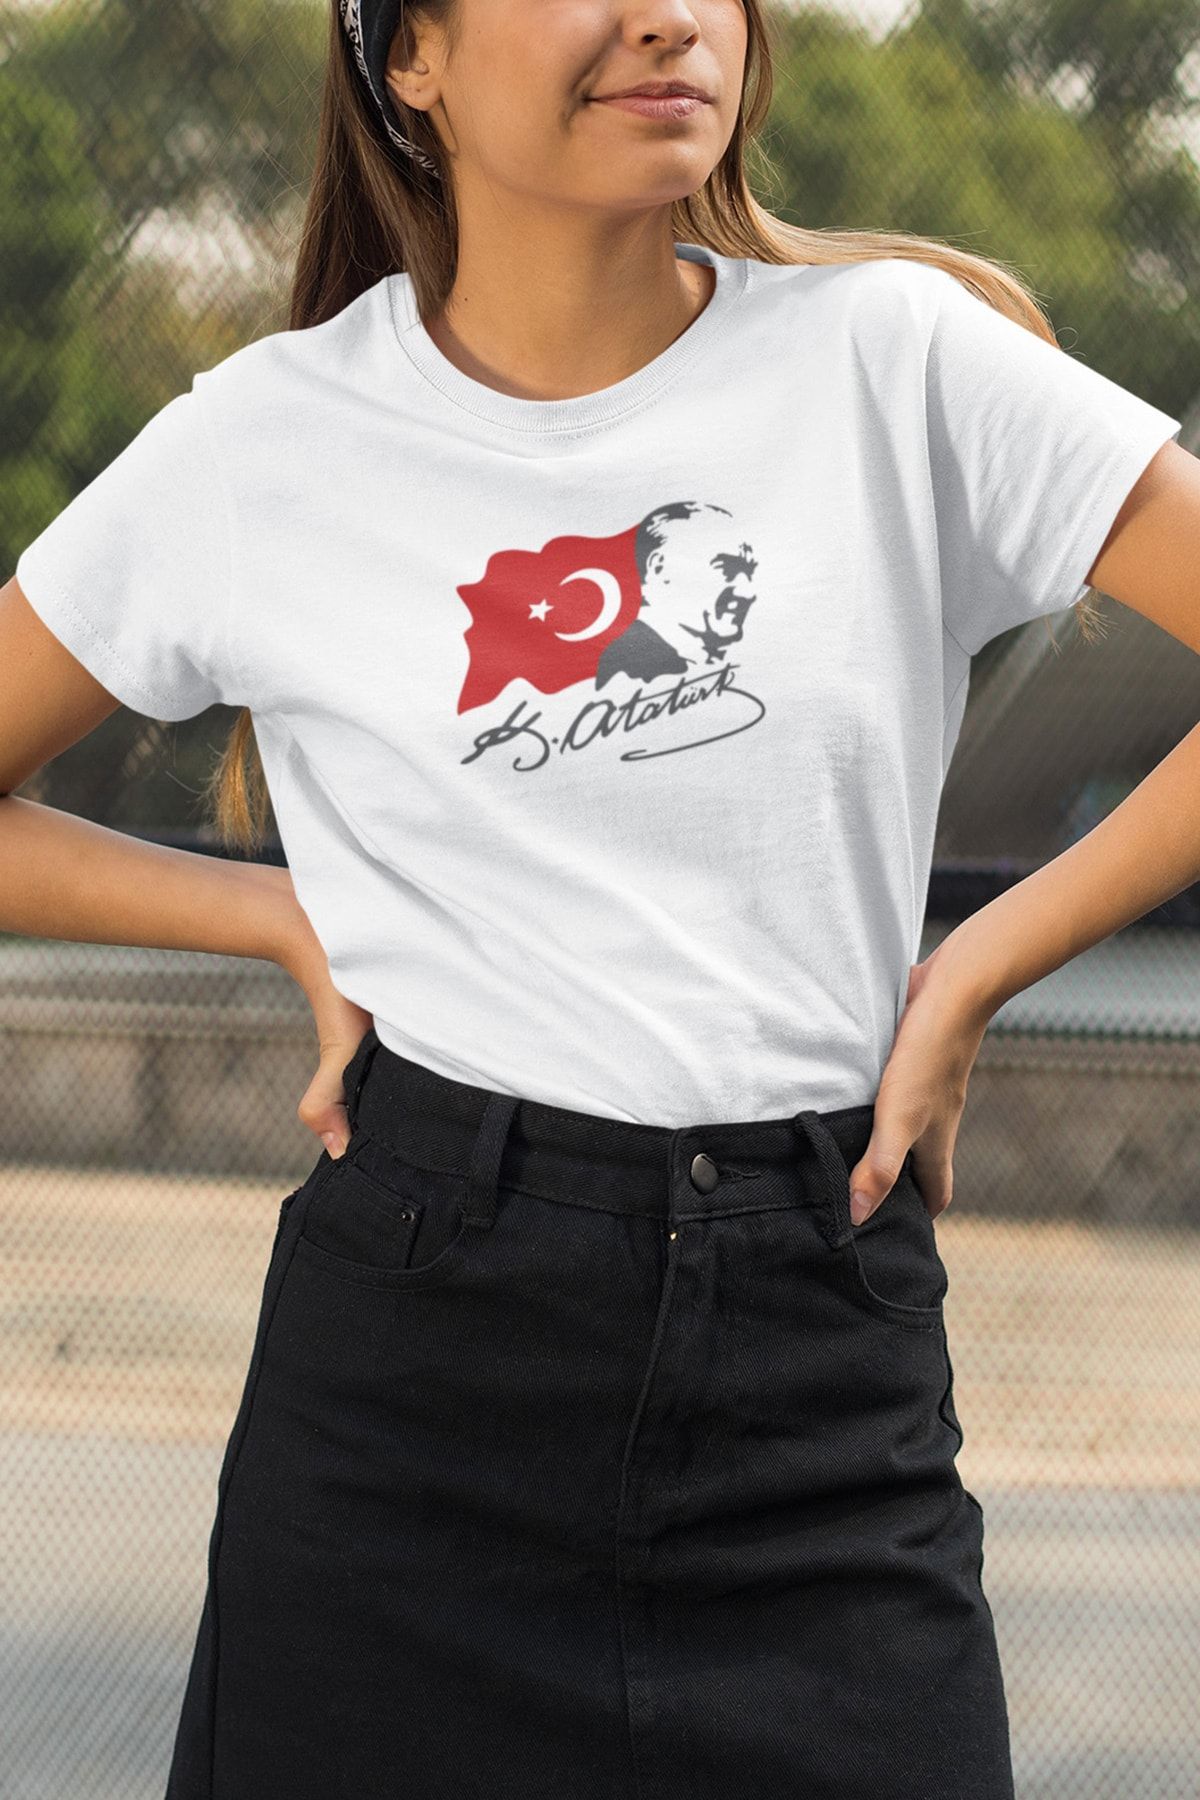 Kio Tasarım Atatürk Serisi Tişört Kadın Çocuk Tişörtü Arkadaşa Sevgiliye  Doğum Günü  T-shirt